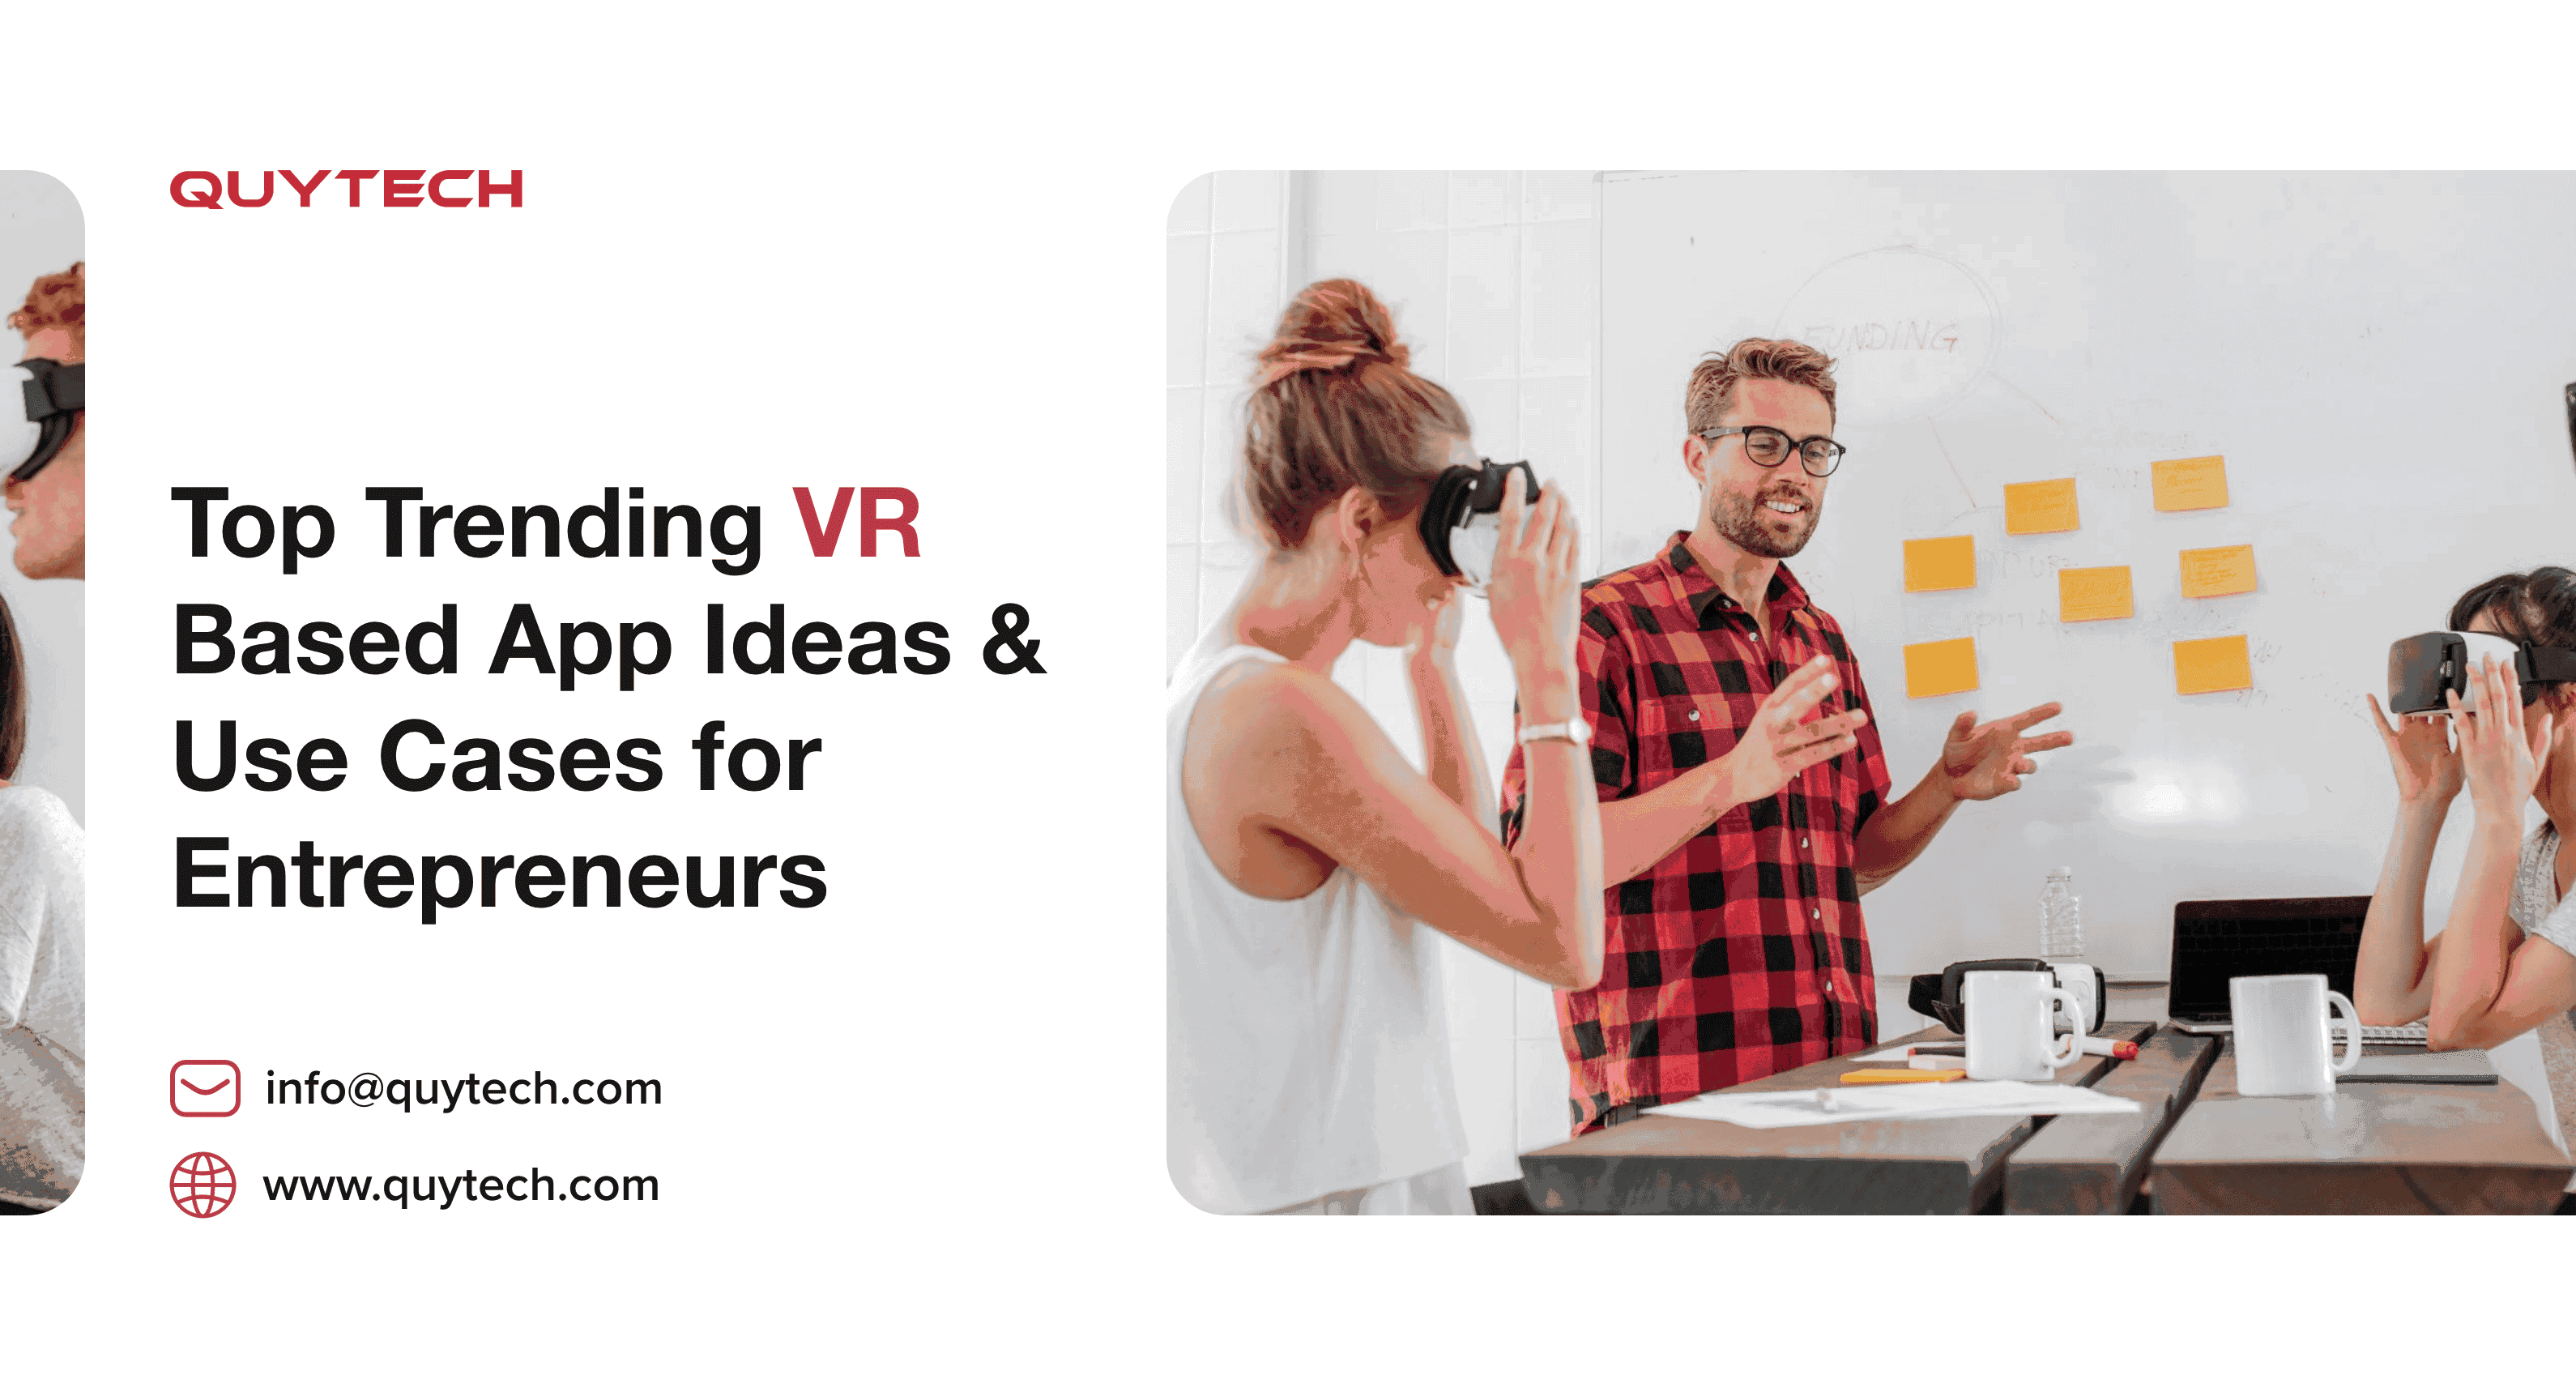 Top Trending VR Based App Ideas & Use Cases for Entrepreneurs